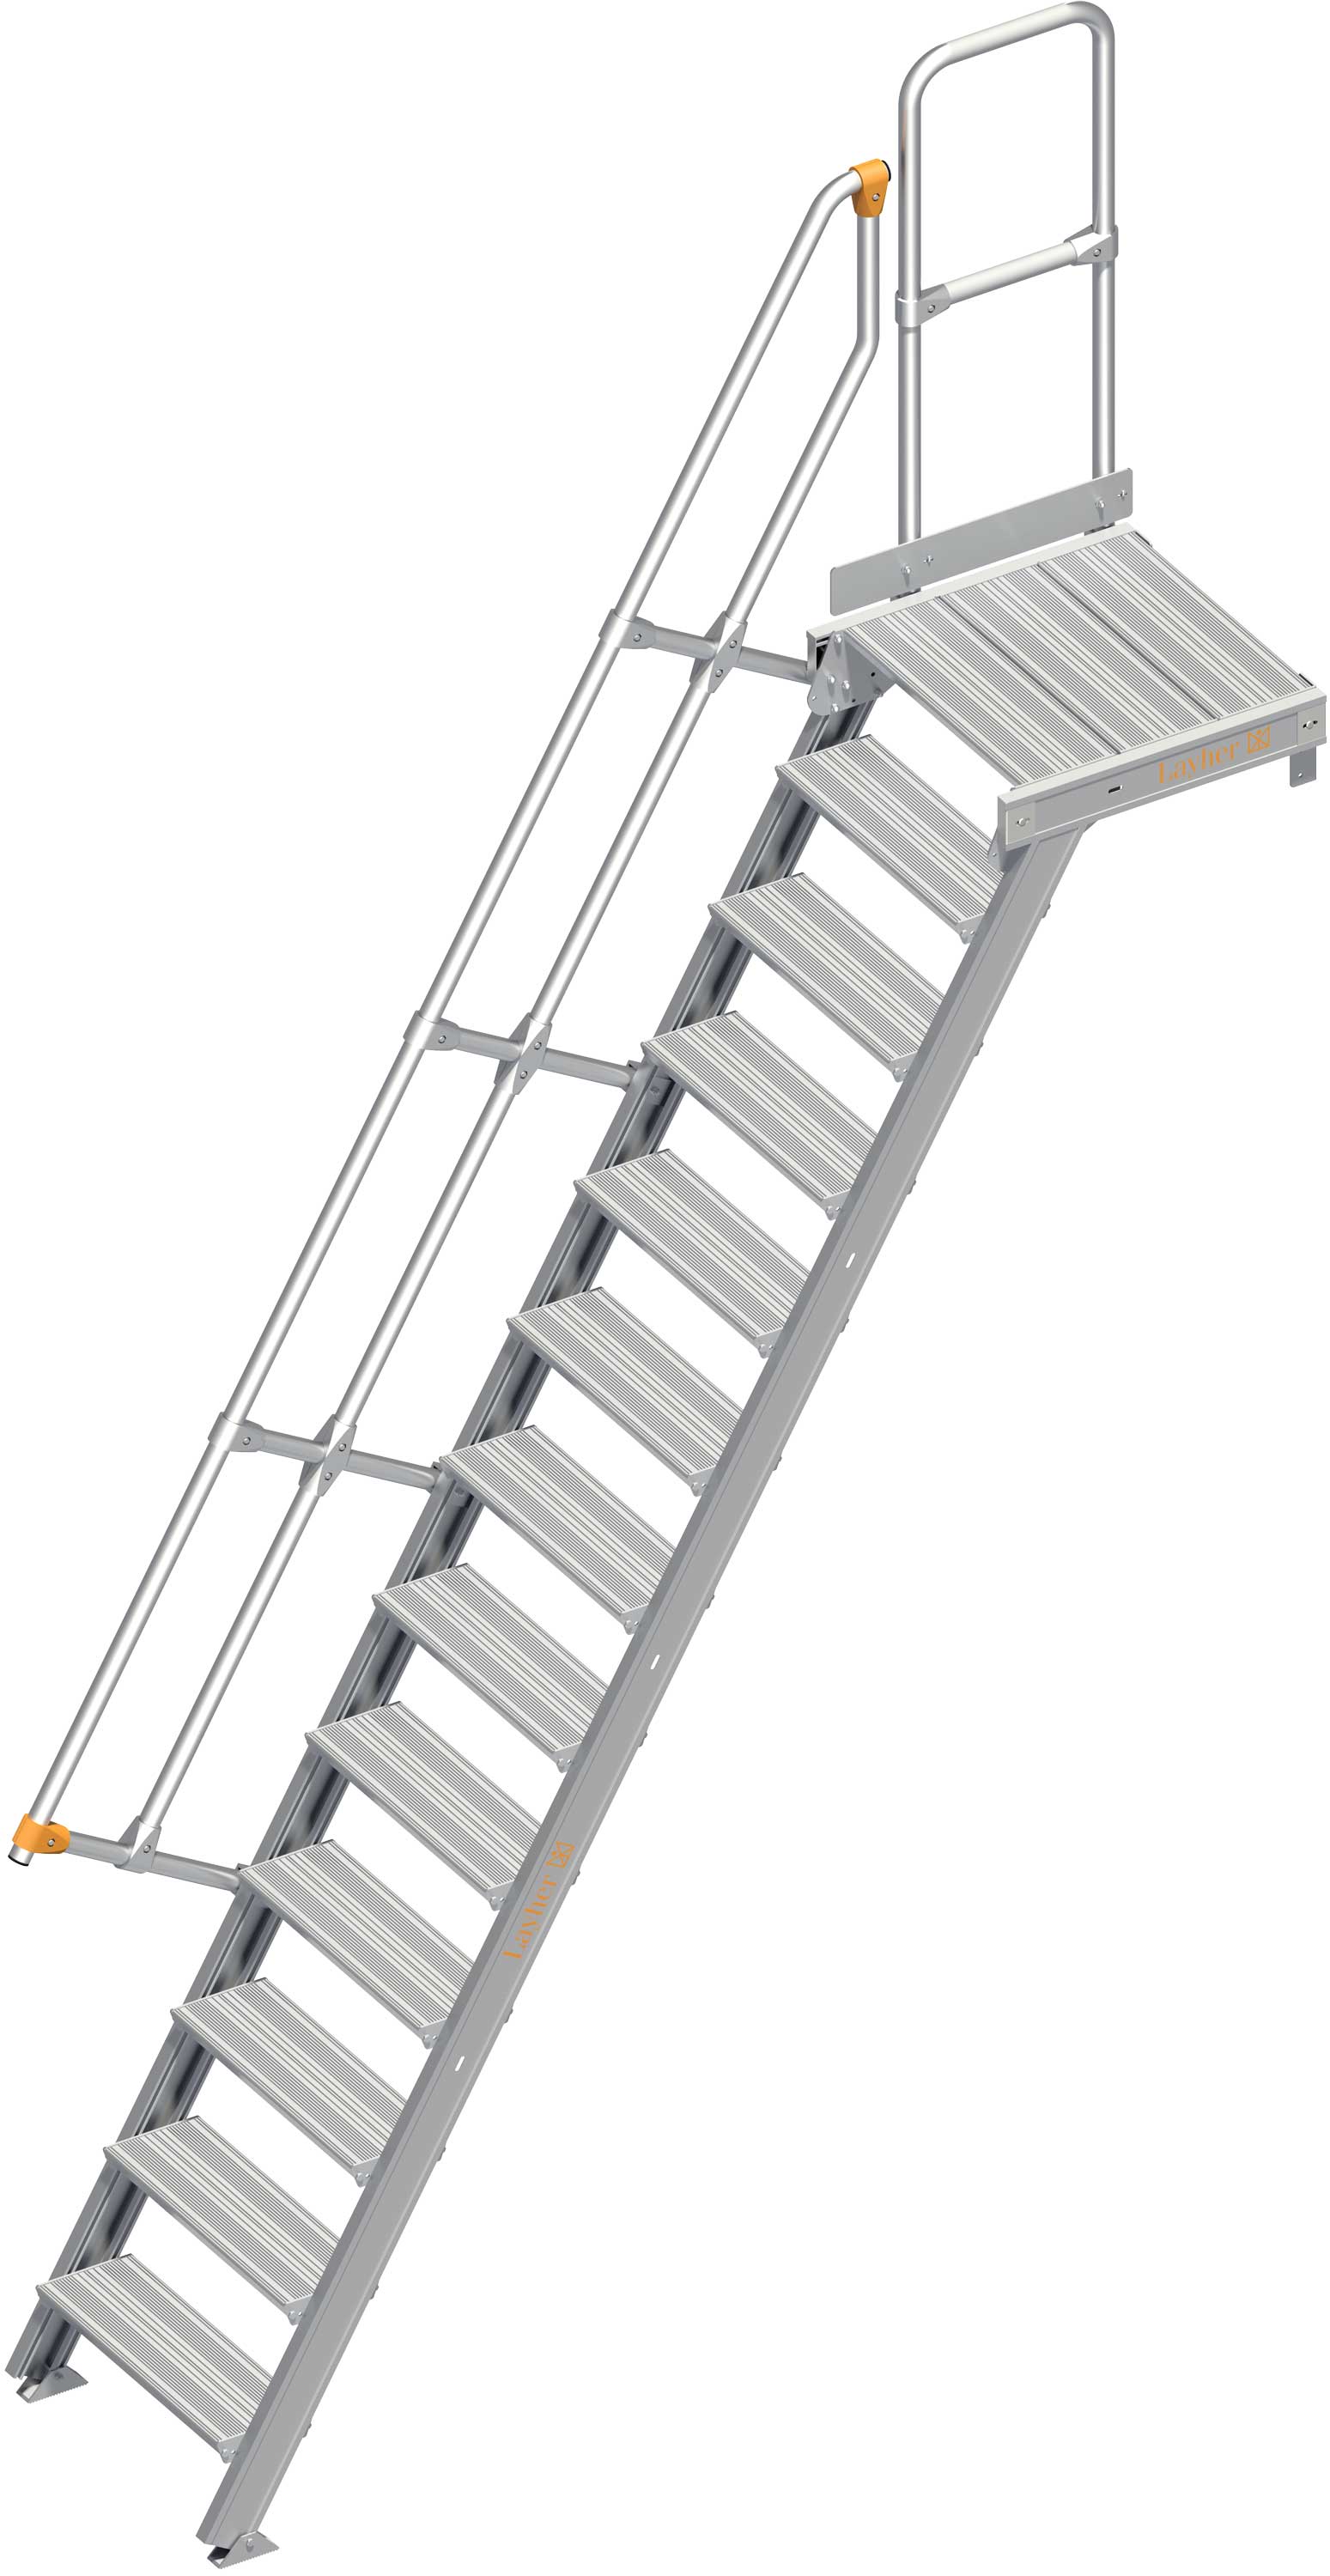 Layher Plattformtreppe 60° SG 13 Stufen - 600 mm breit